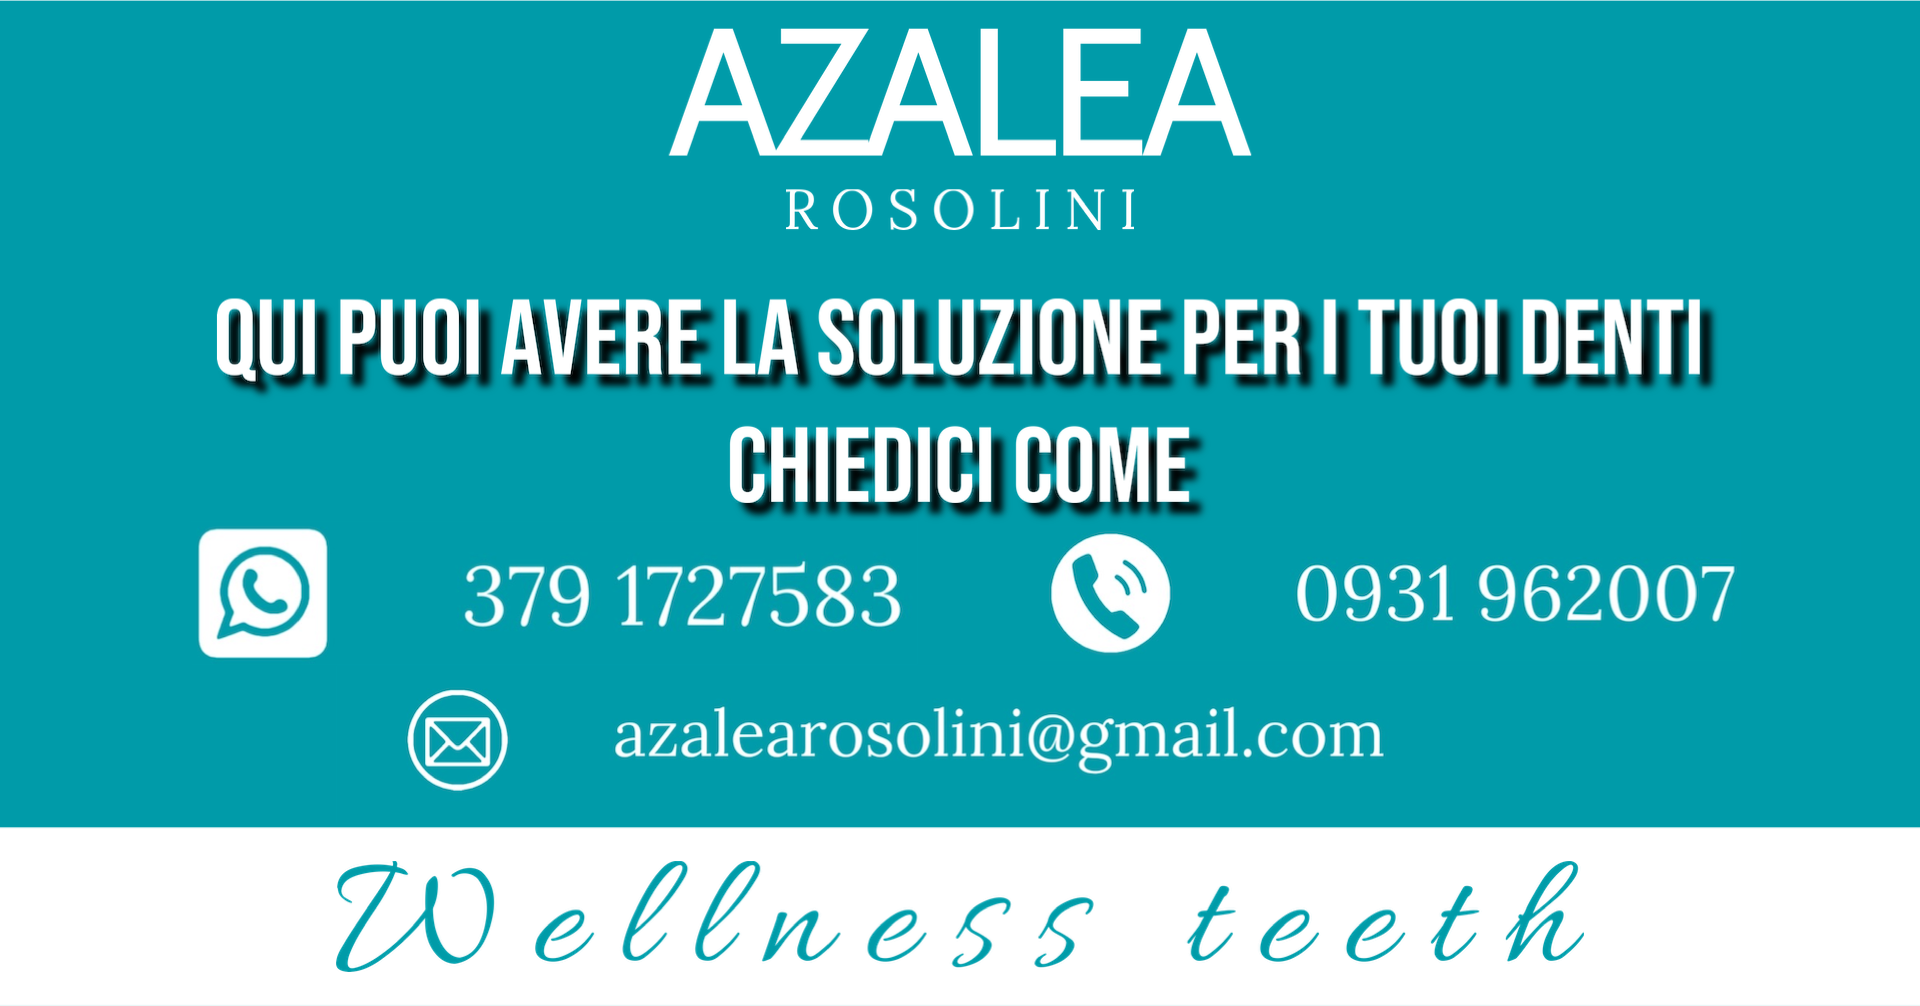 Azalea Rosolini ti propone soluzioni su misura per te